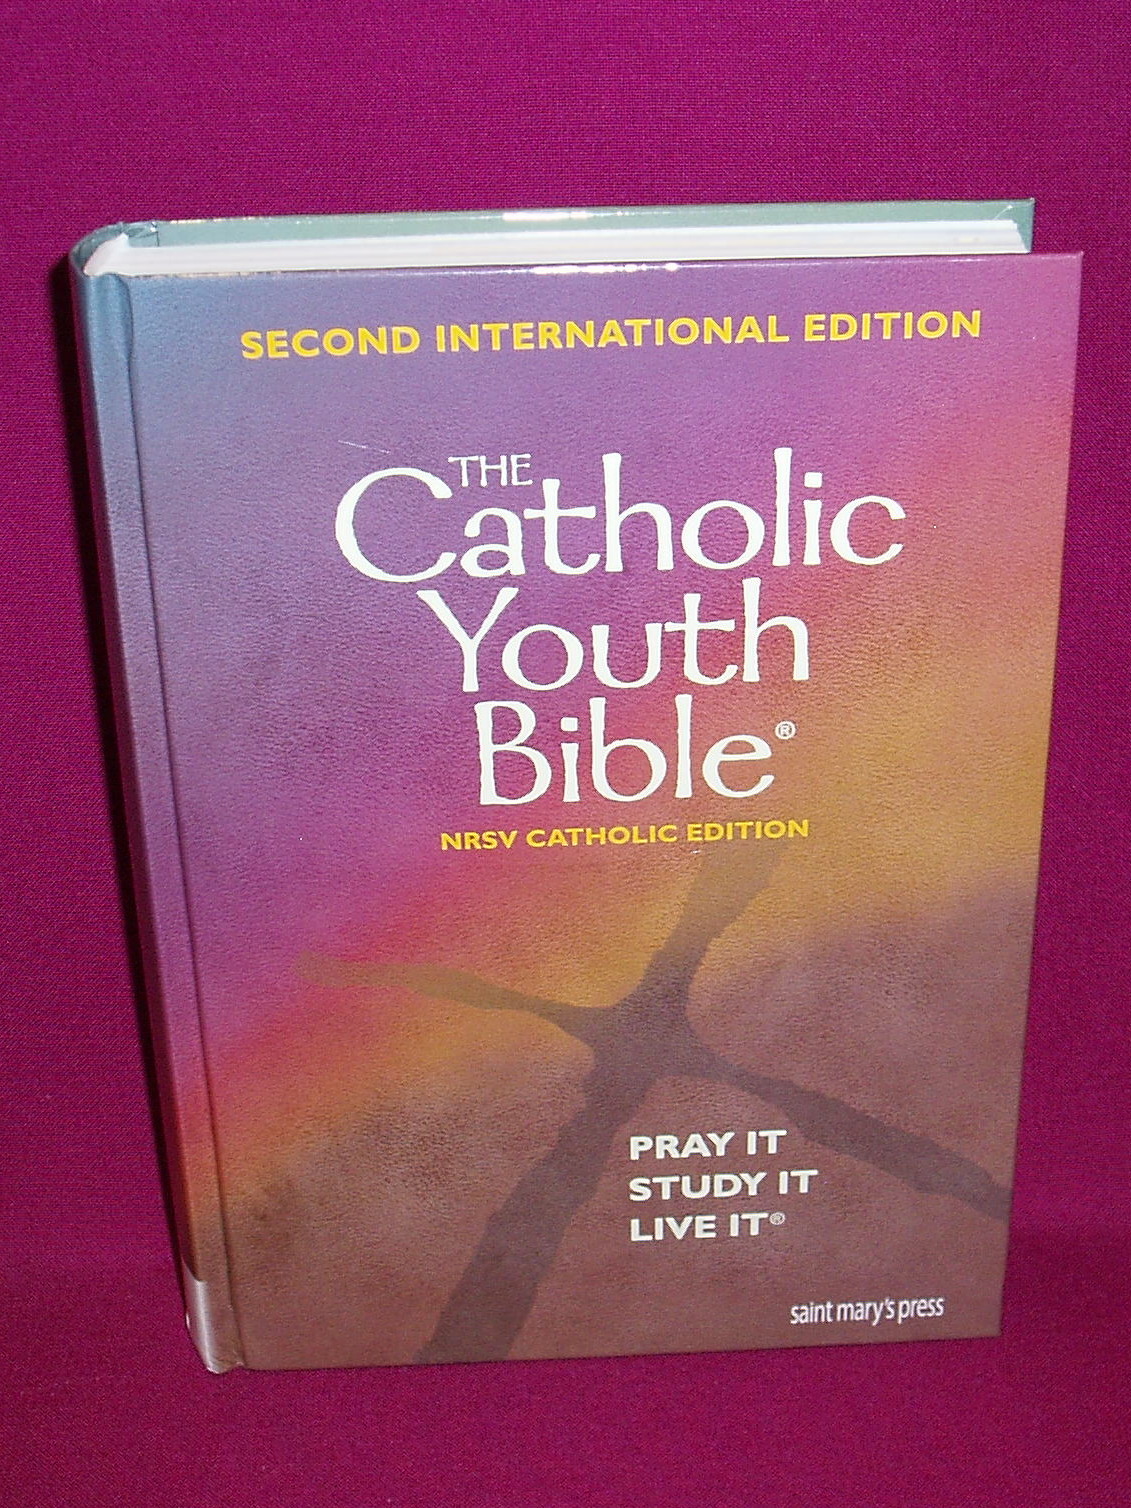 Catholic Youth Bible